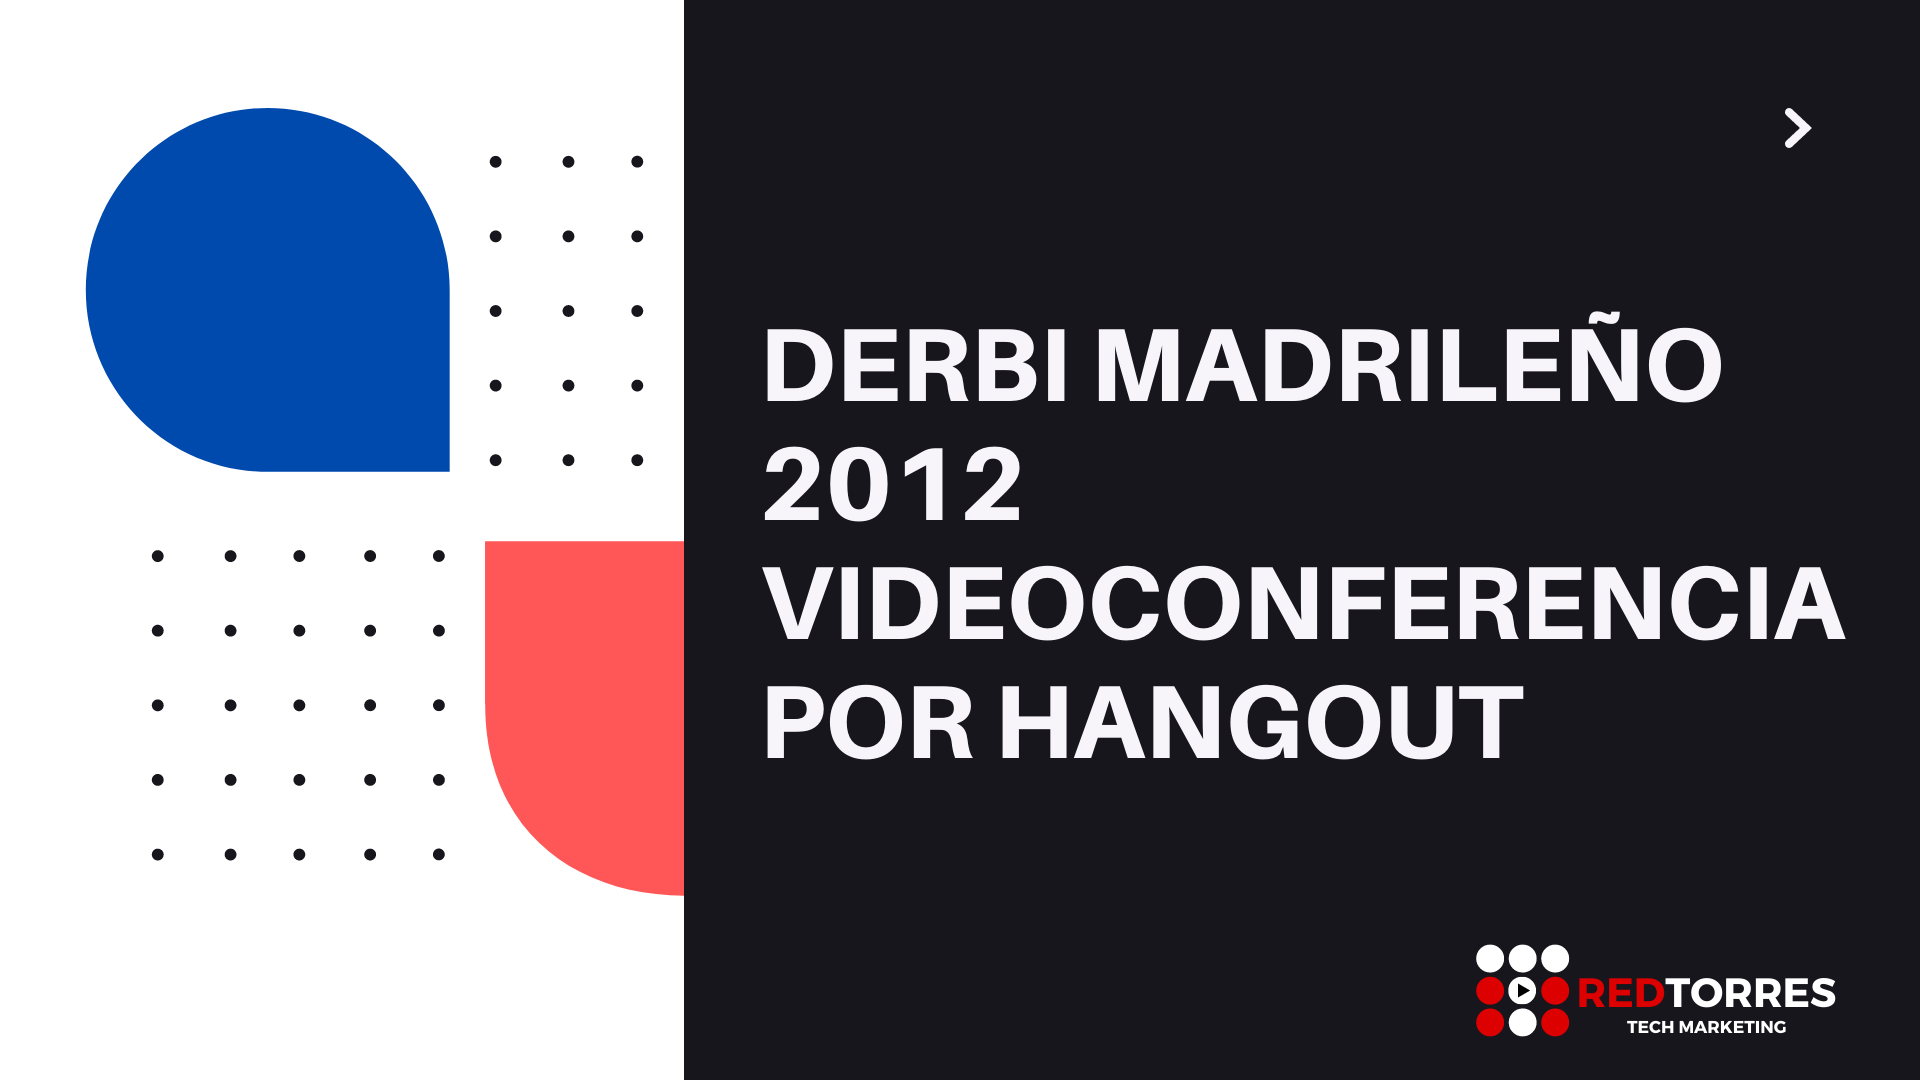 Productora Videoconferencia con Hangout derbi madrileño REDTORRES